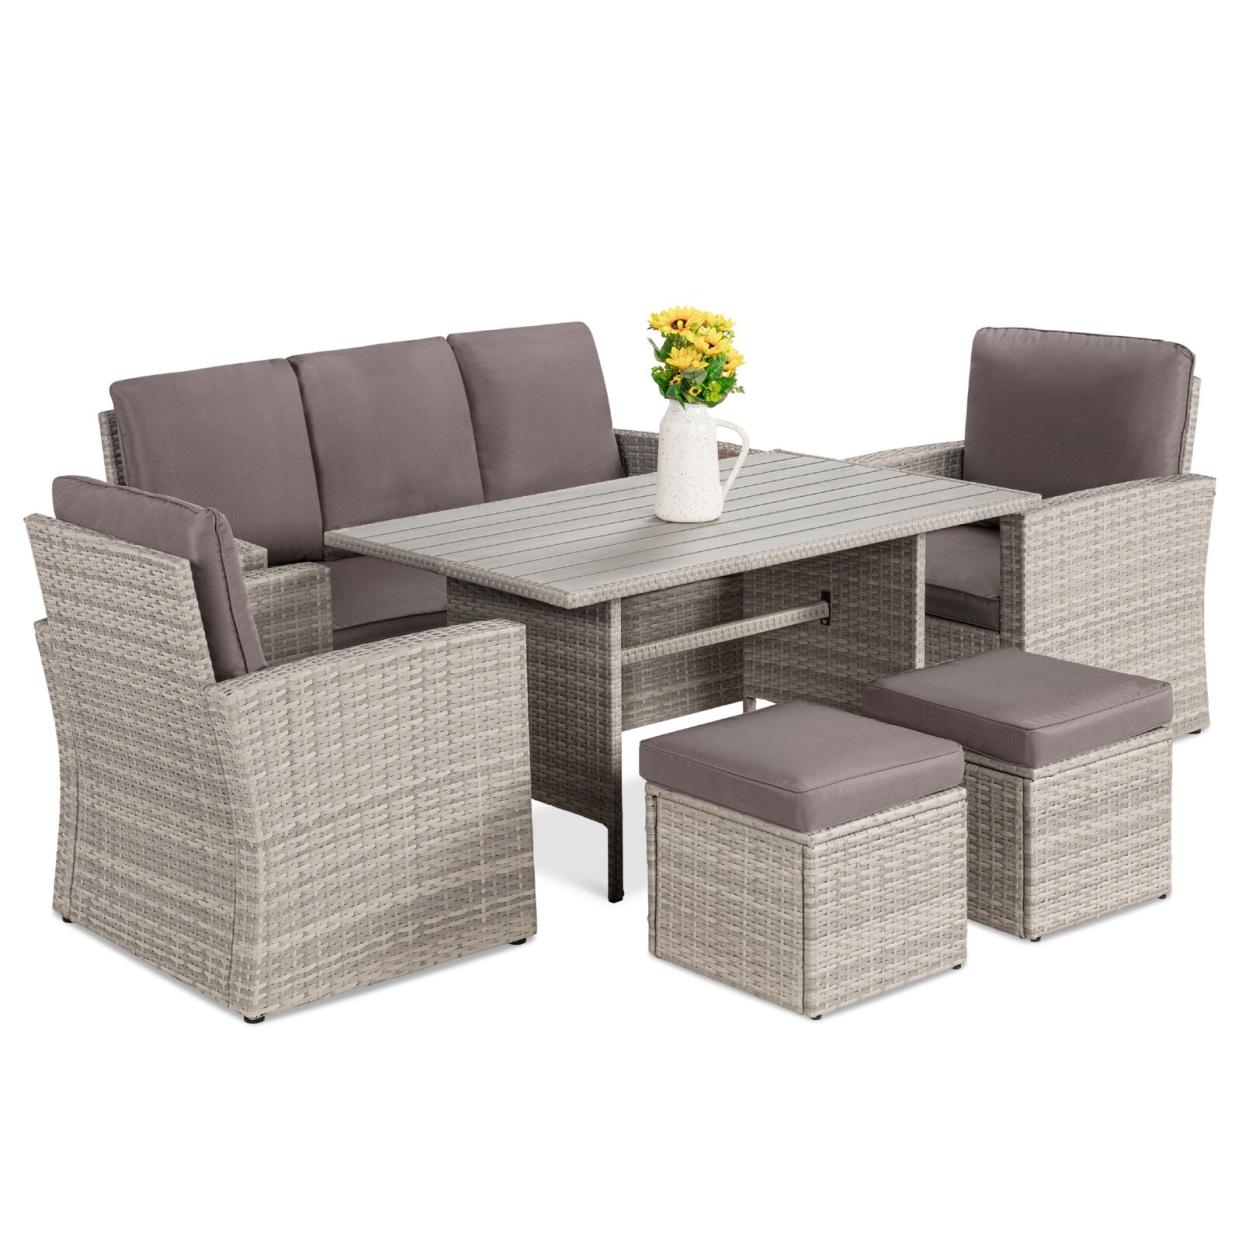 Ilio 7-person rectangular dining set, patio furniture sets